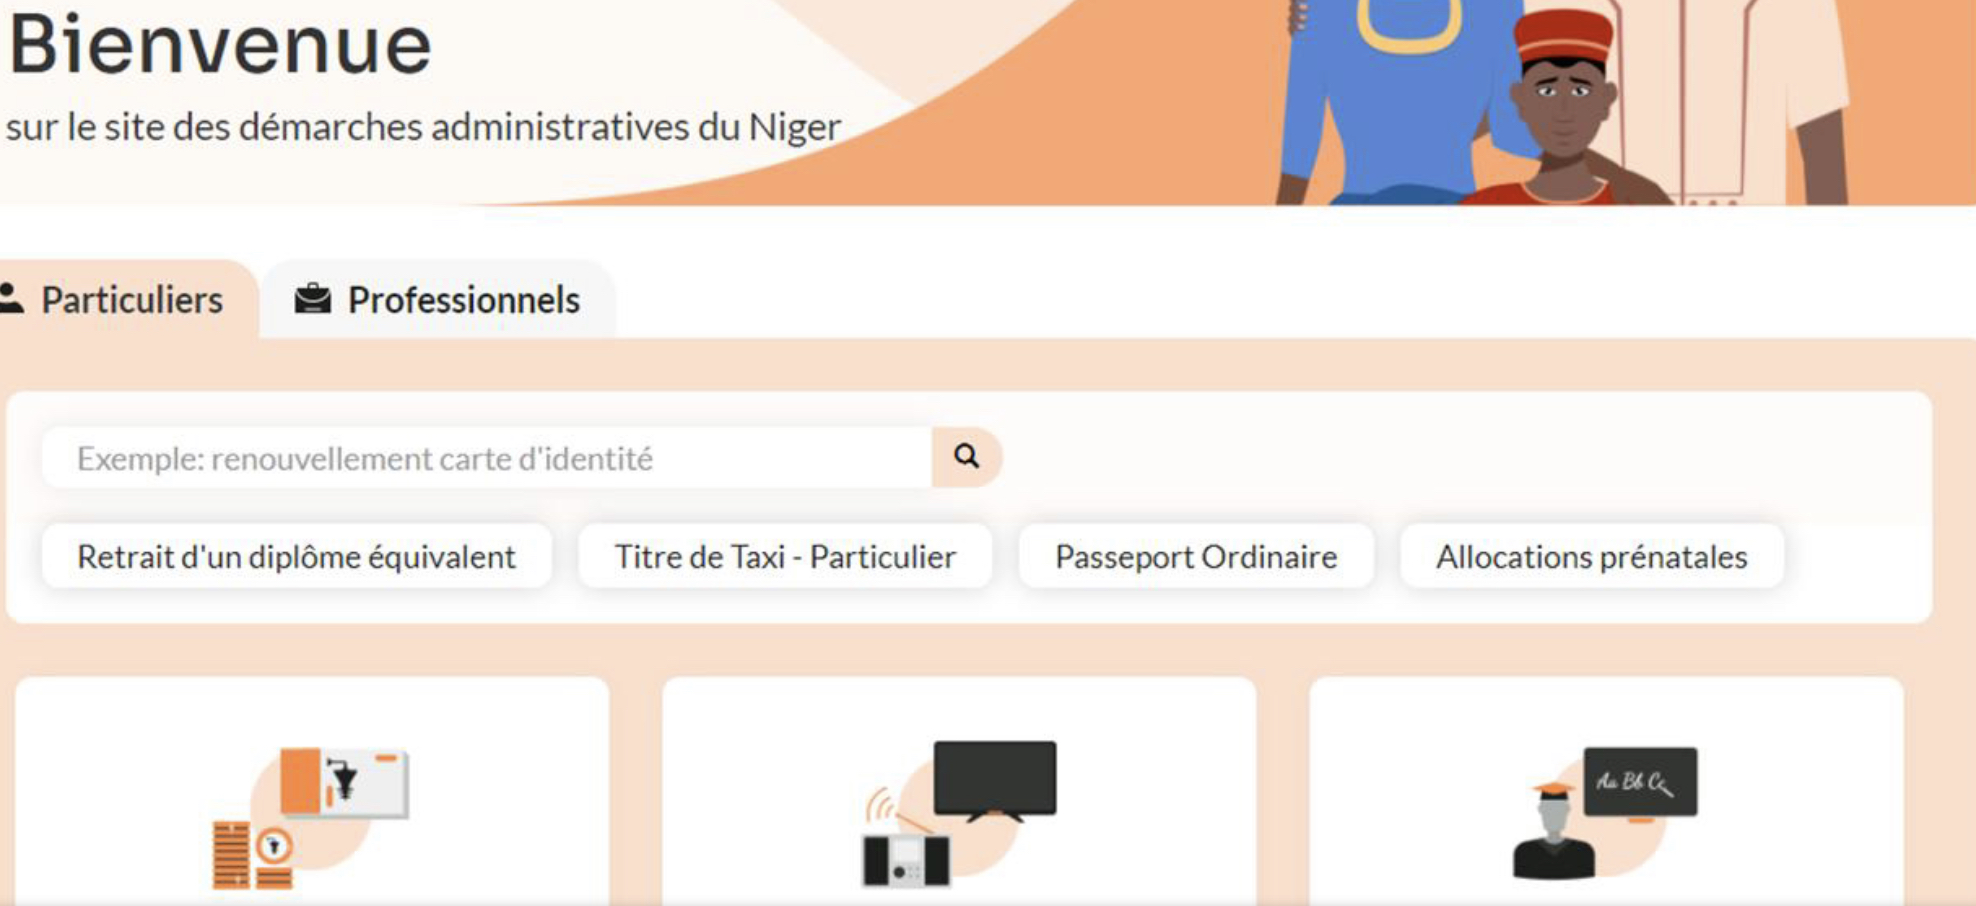 Les services publics du Niger ont leur portail web